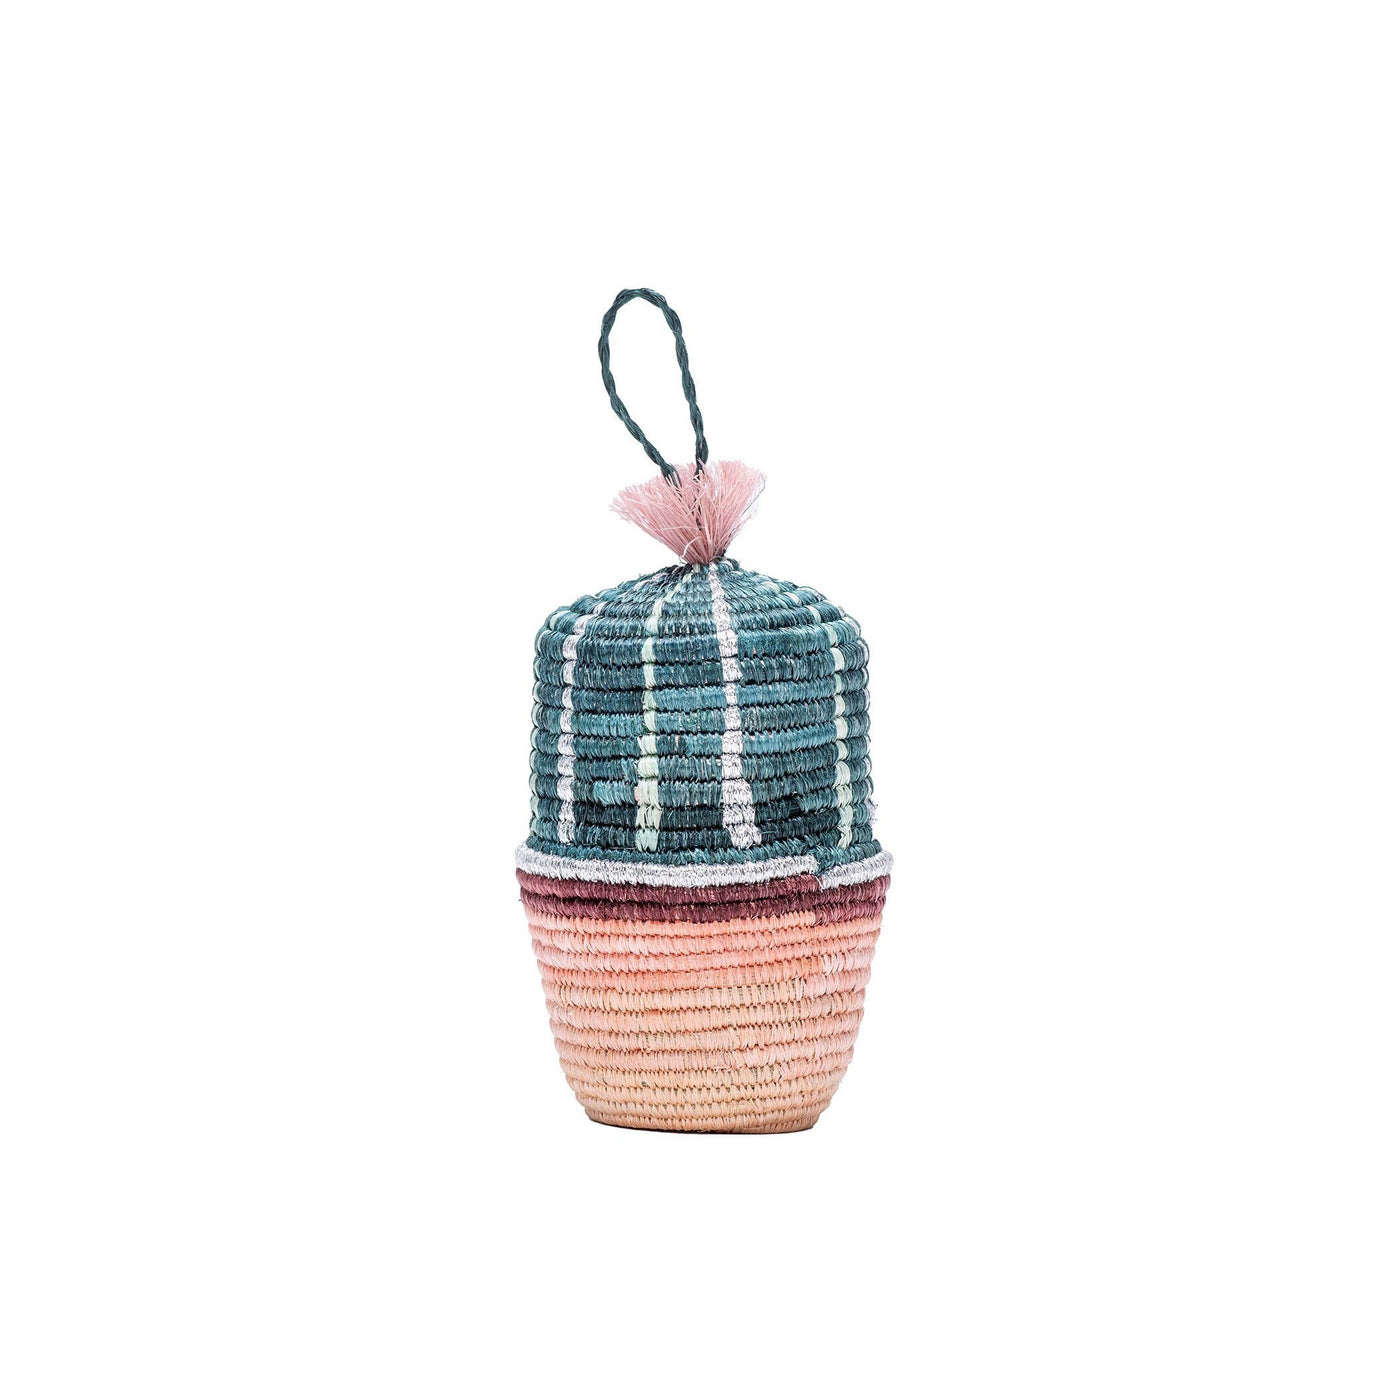 Cactus Planter Ornament